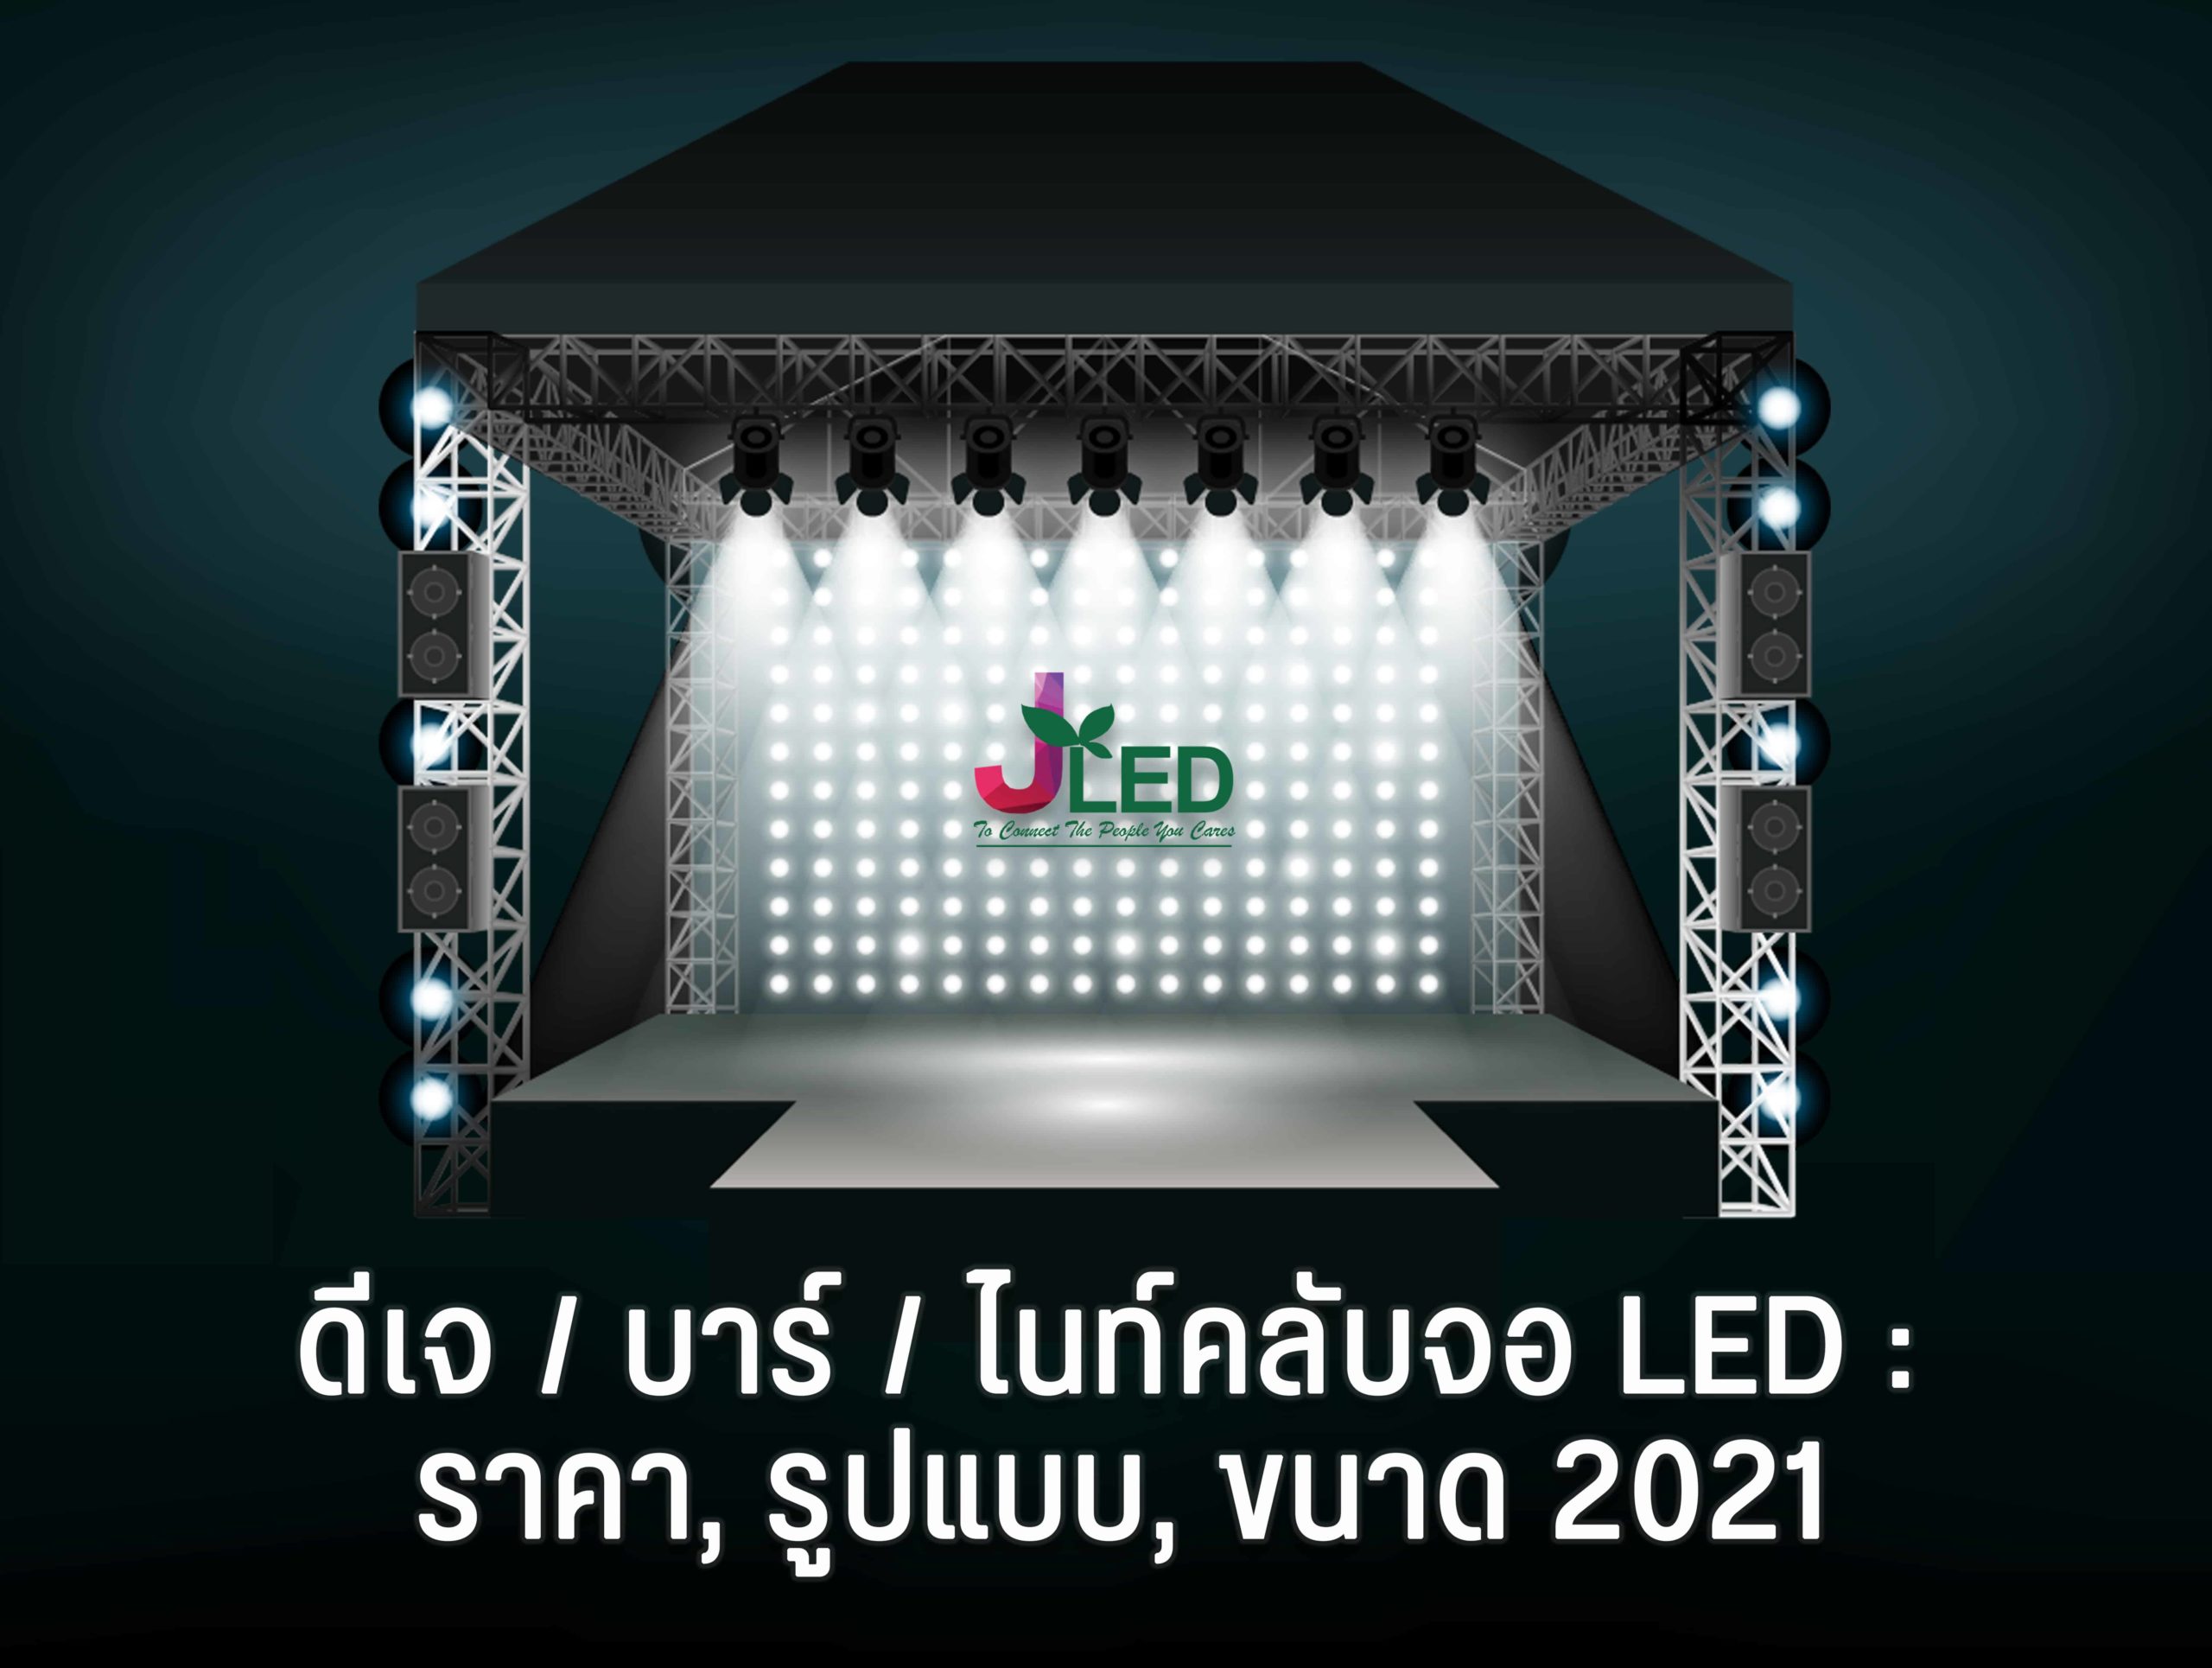 ดีเจ / บาร์ / ไนท์คลับจอ LED : ราคา, รูปแบบ, ขนาด 2021